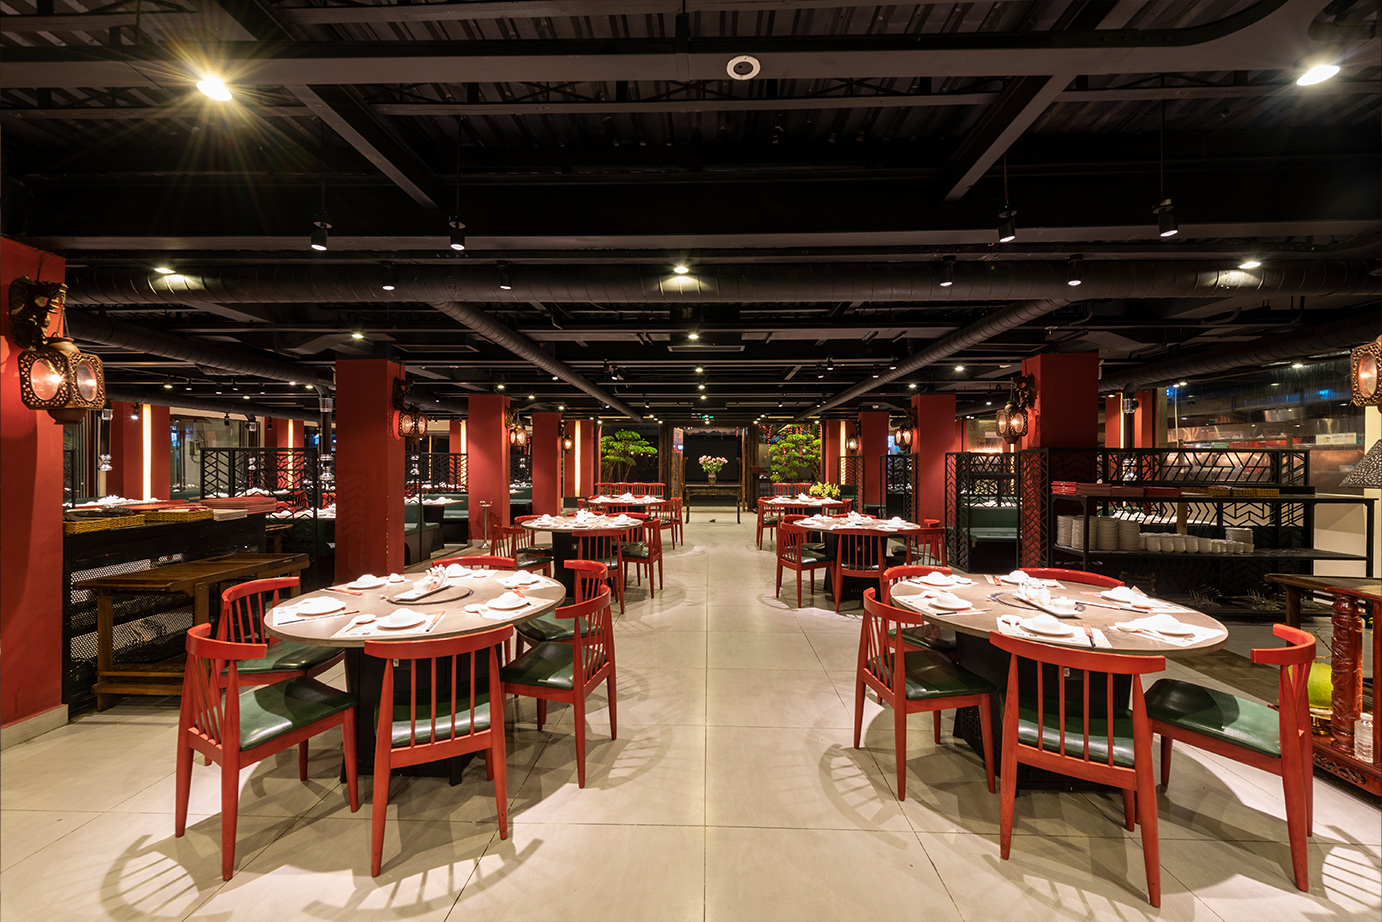 Khám phá không gian ẩm thực Quảng Đông tuyệt vời tại nhà hàng Tân Hải Vân